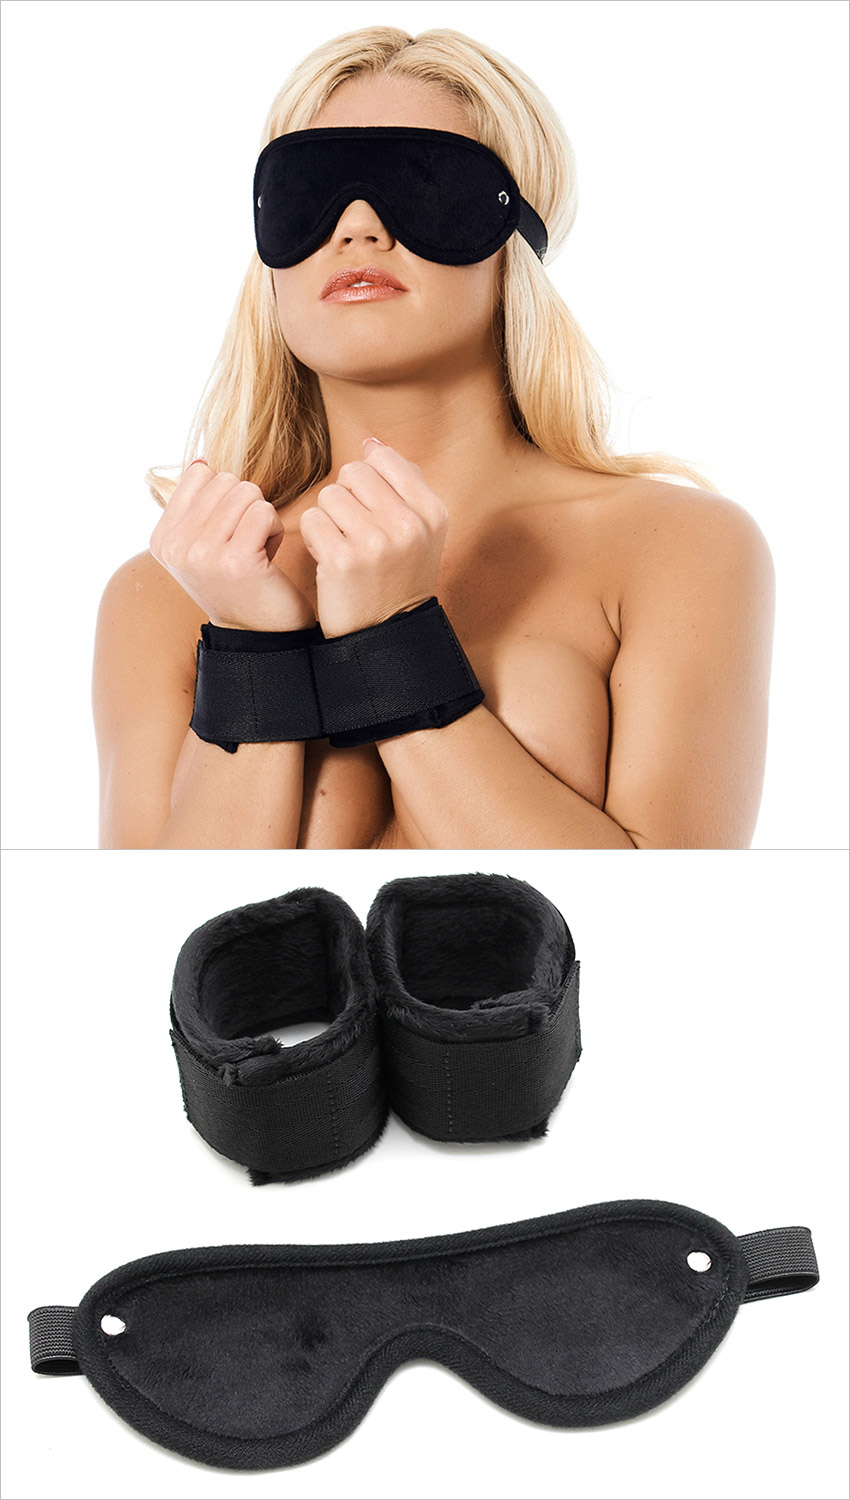 Rimba Soft Bondage set (mask and handcuffs)